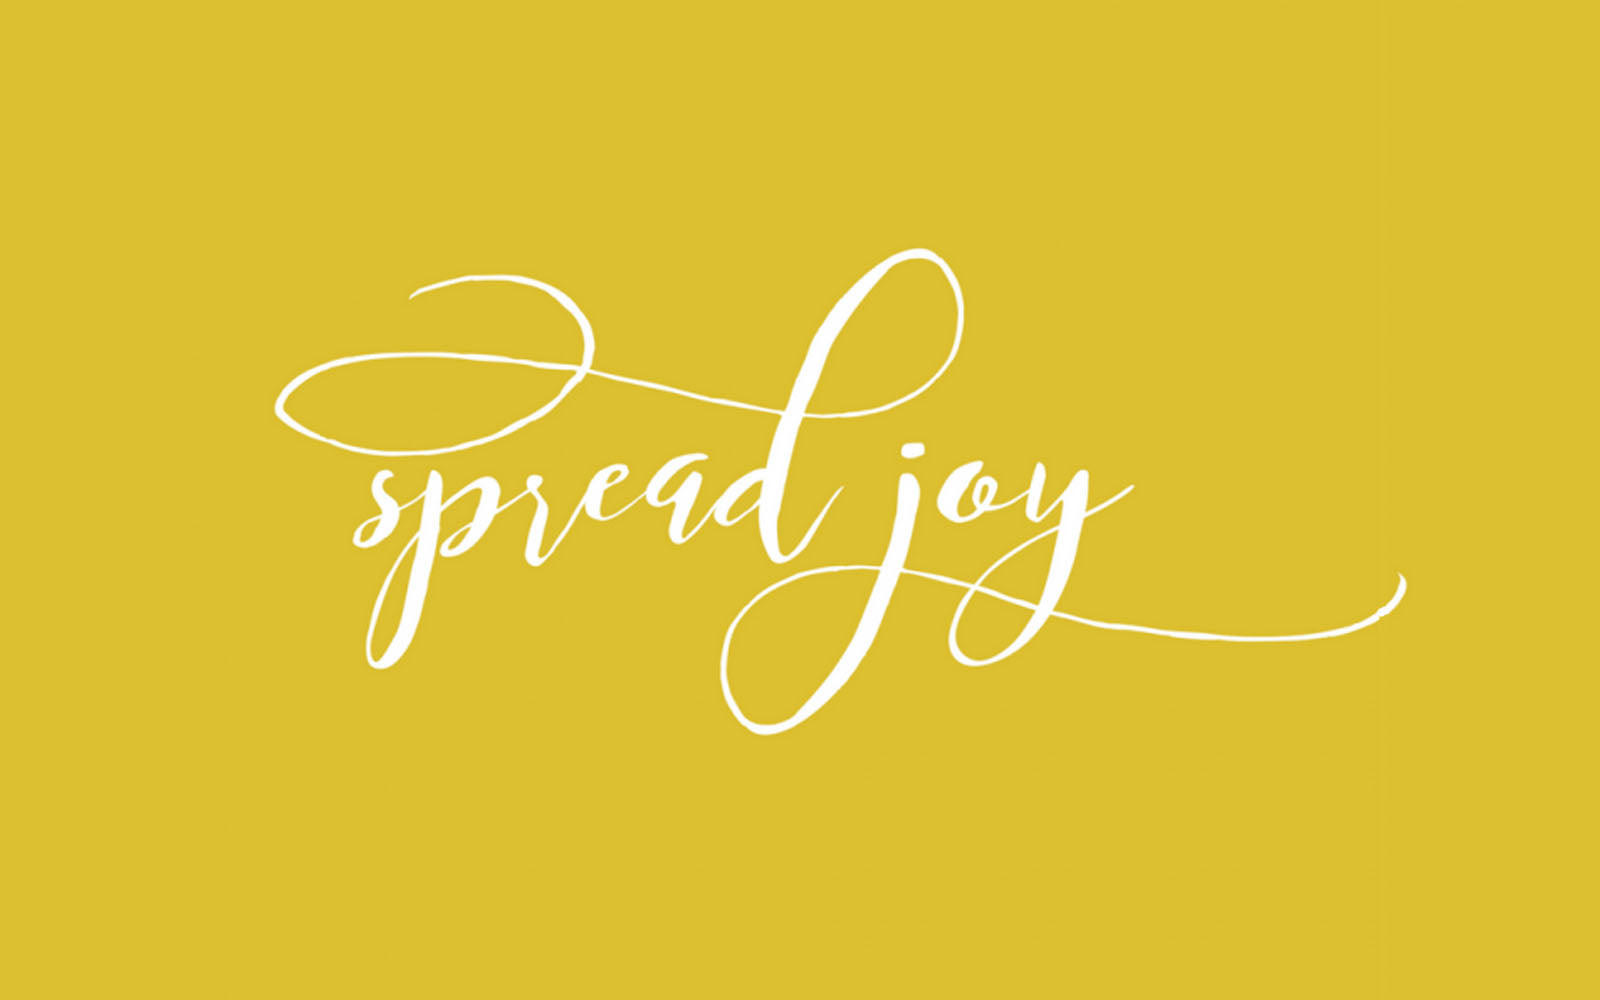 It's Time to Spread Joy